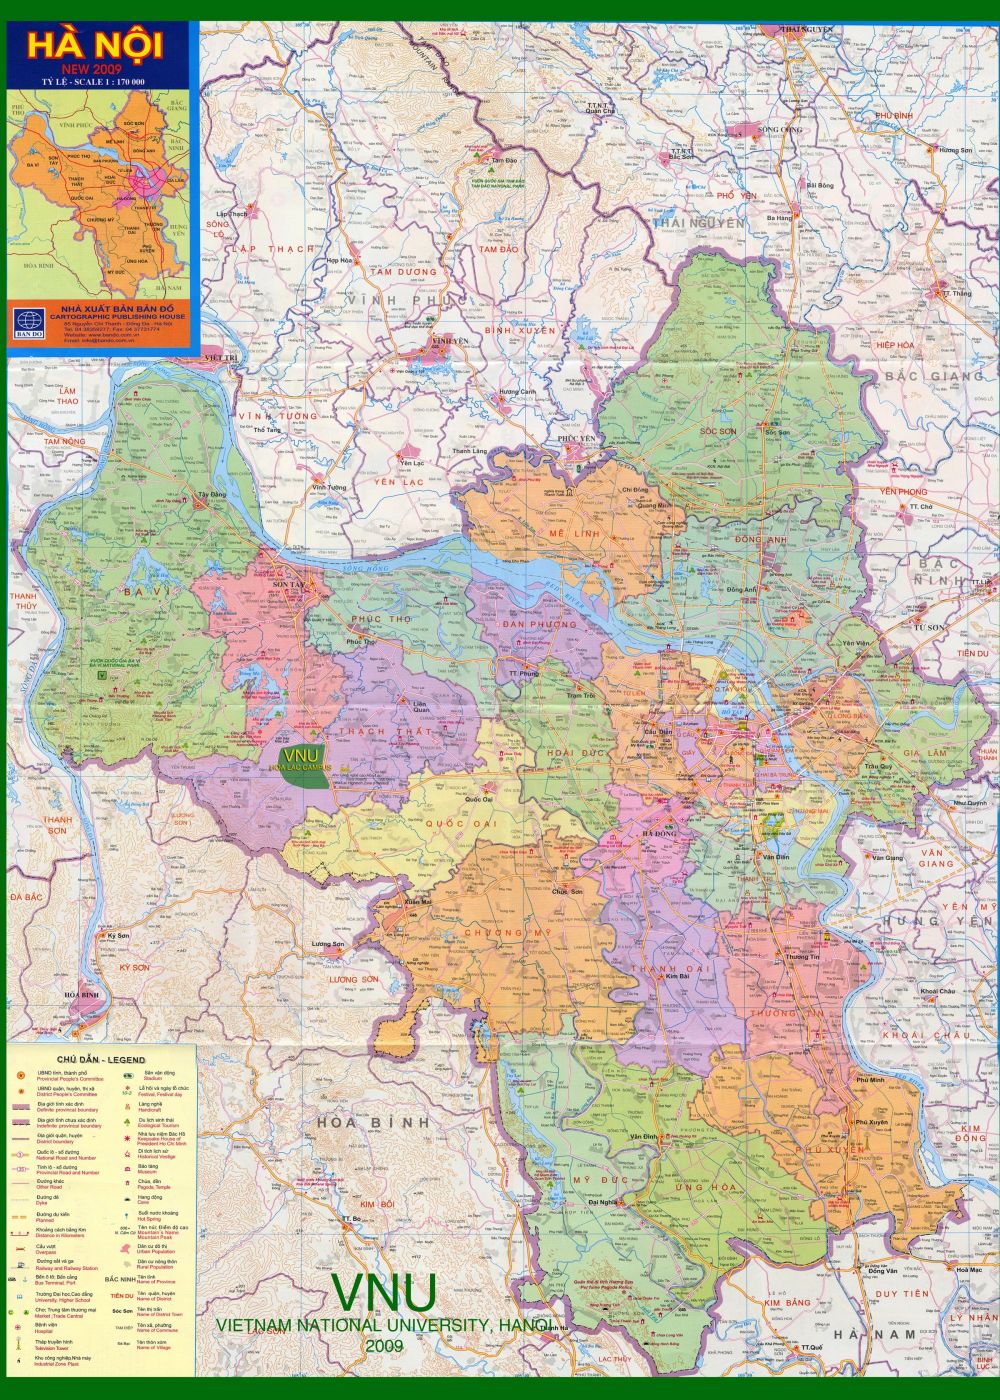 Khổ lớn và cập nhật đến năm 2024, bản đồ hành chính các quận TP Hà Nội giúp bạn dễ dàng tham khảo và quản lý thông tin của vùng đất mình quan tâm. Hãy chiêm ngưỡng hình ảnh để khám phá sự đổi mới và phát triển của đô thị Hà Nội.